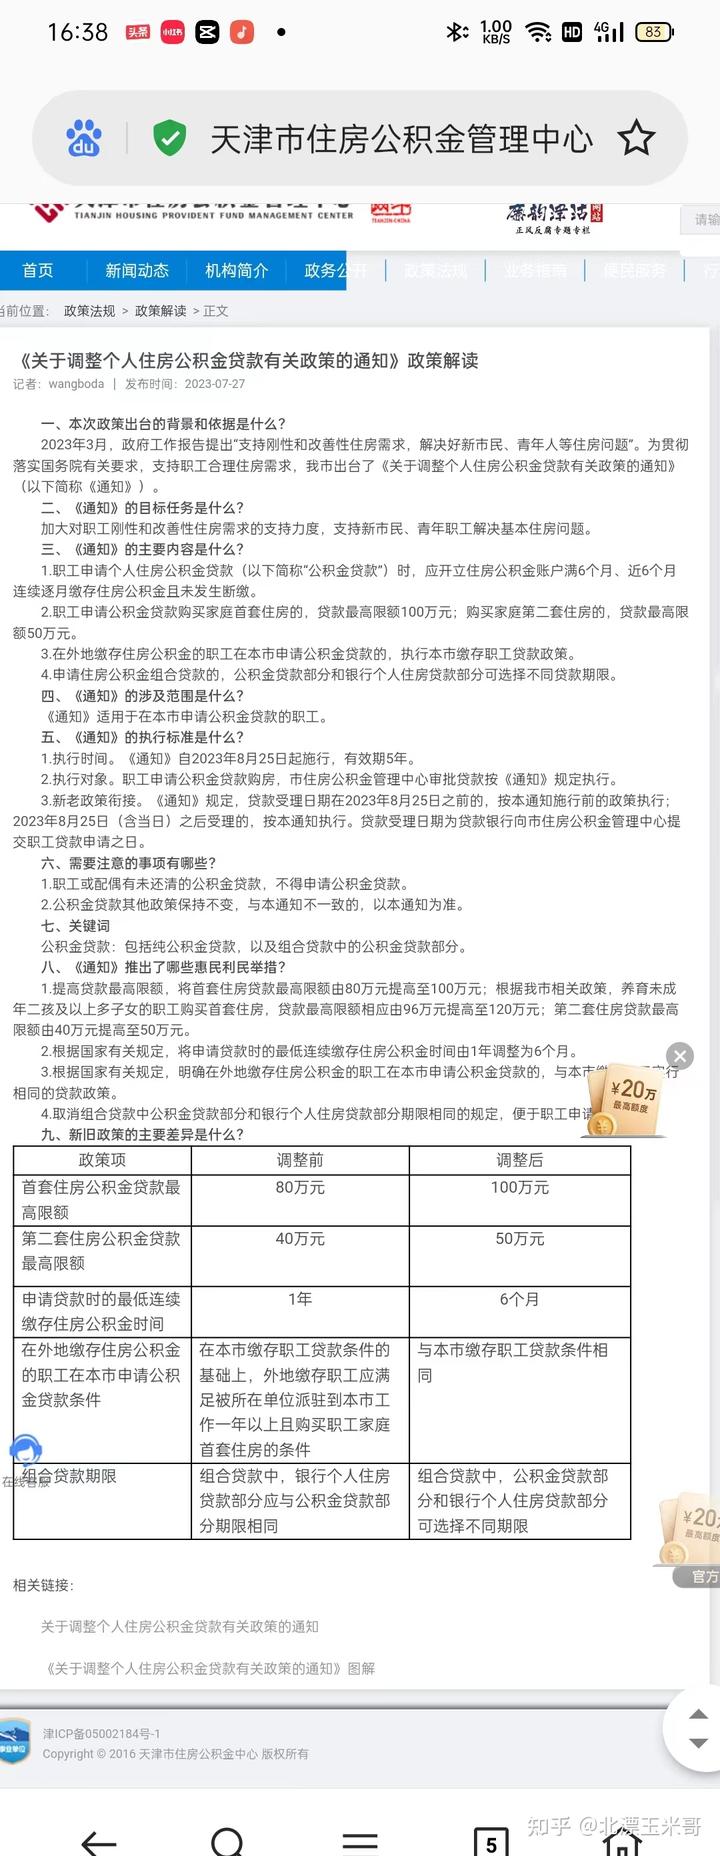 天津最新公积金政策2023.8.25日之后实施。白话解读